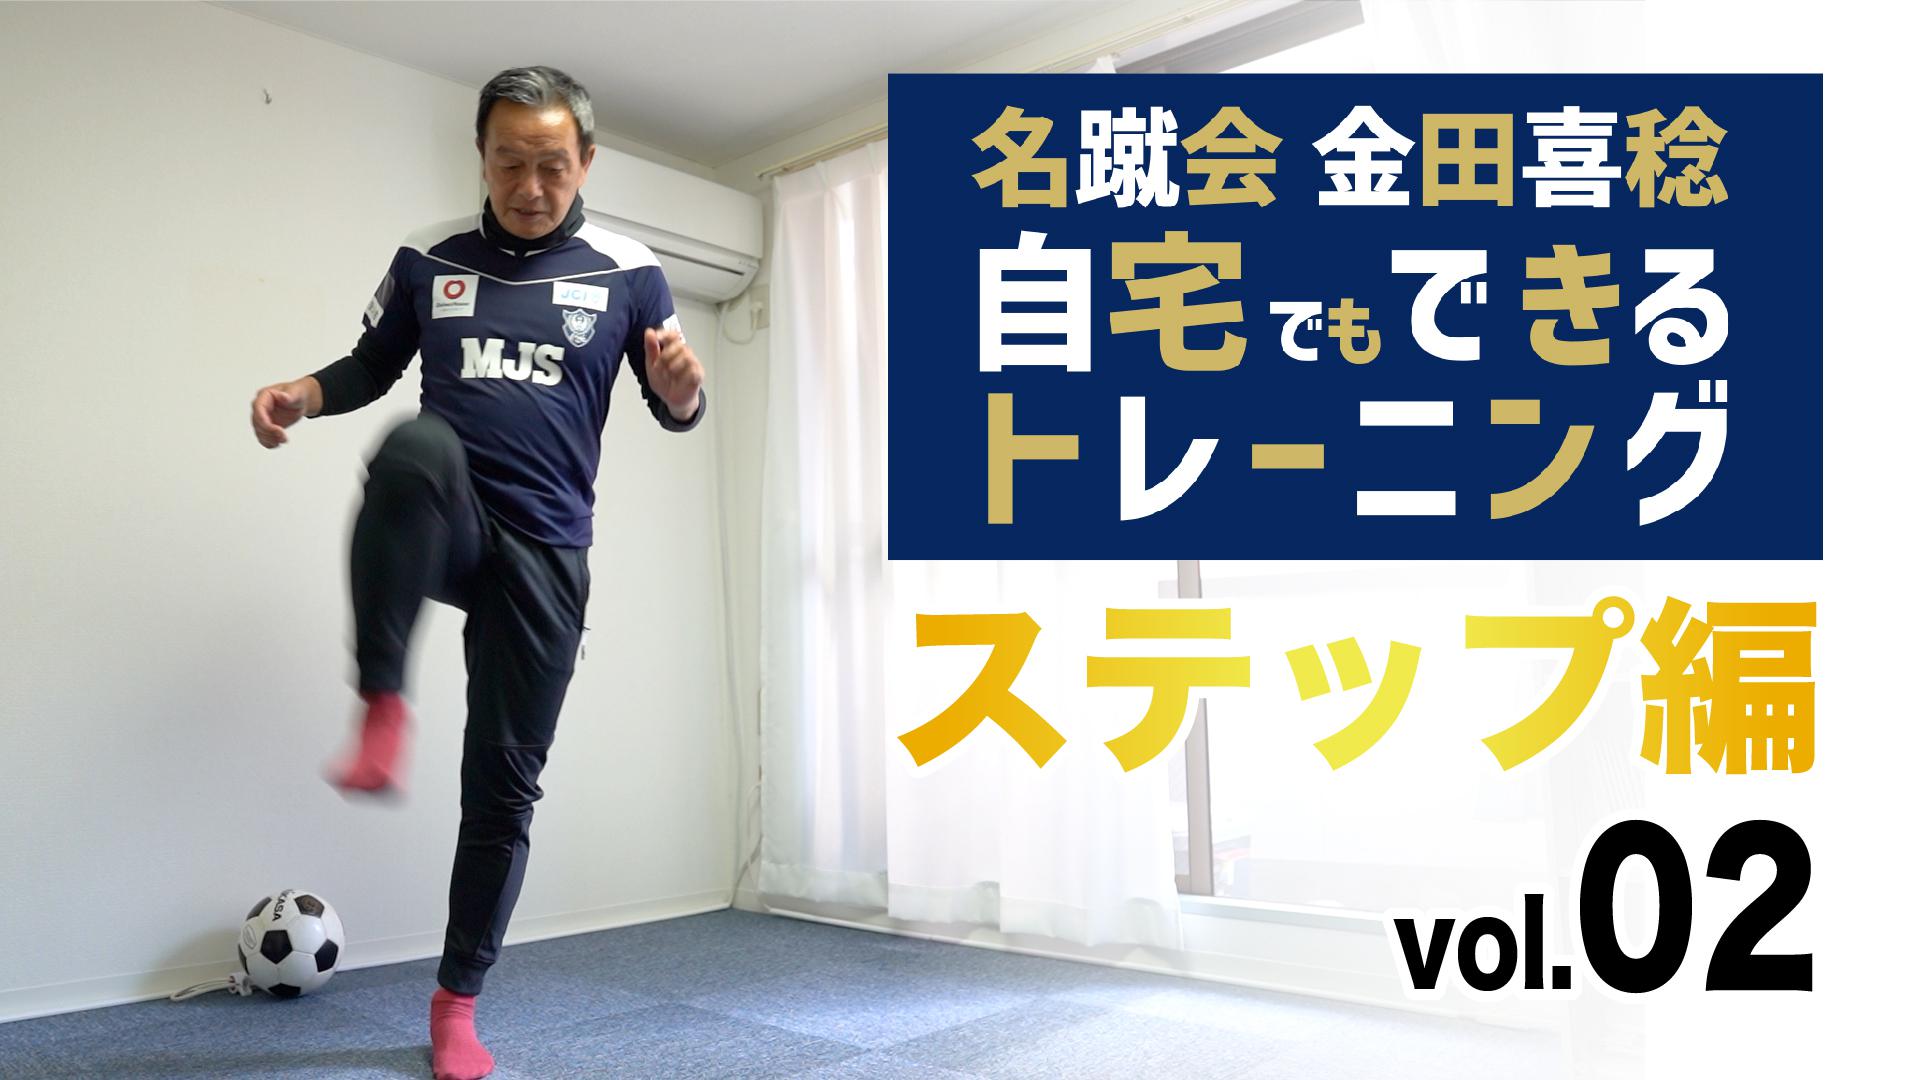 一般社団法人 日本サッカー名蹴会 公式サイト 名蹴会 金田喜稔 自宅でもできるトレーニング動画を公開